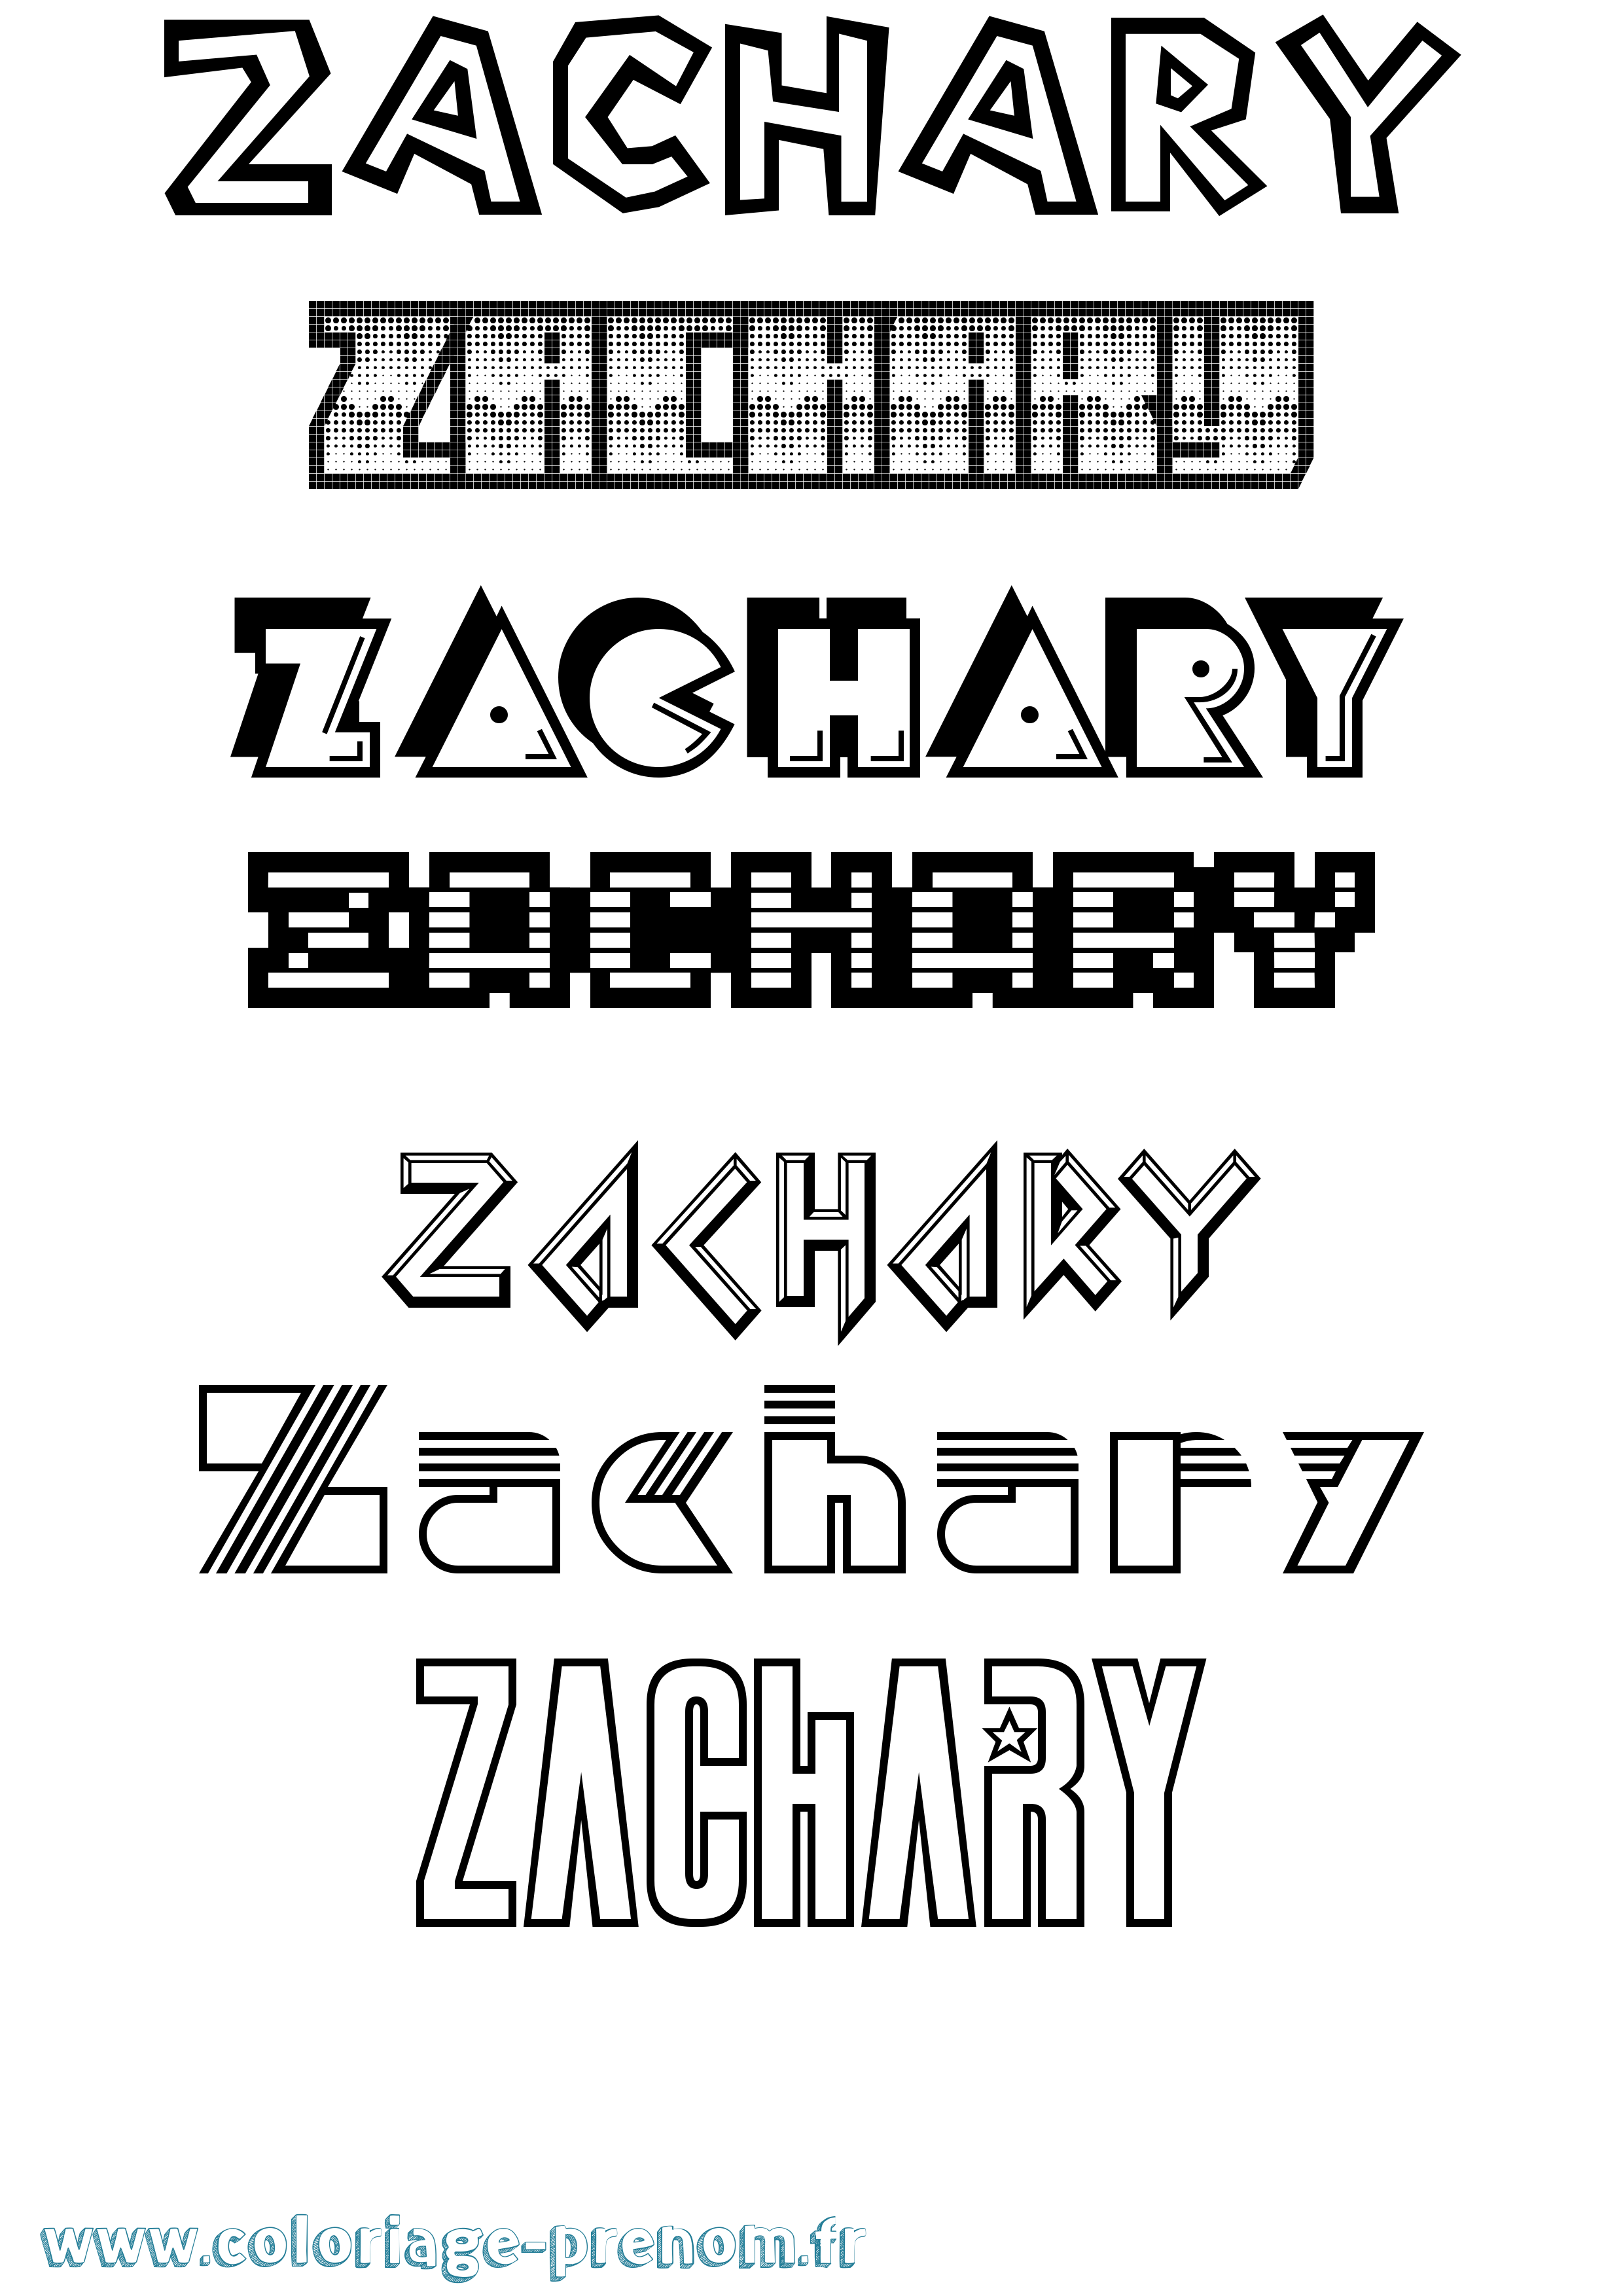 Coloriage prénom Zachary